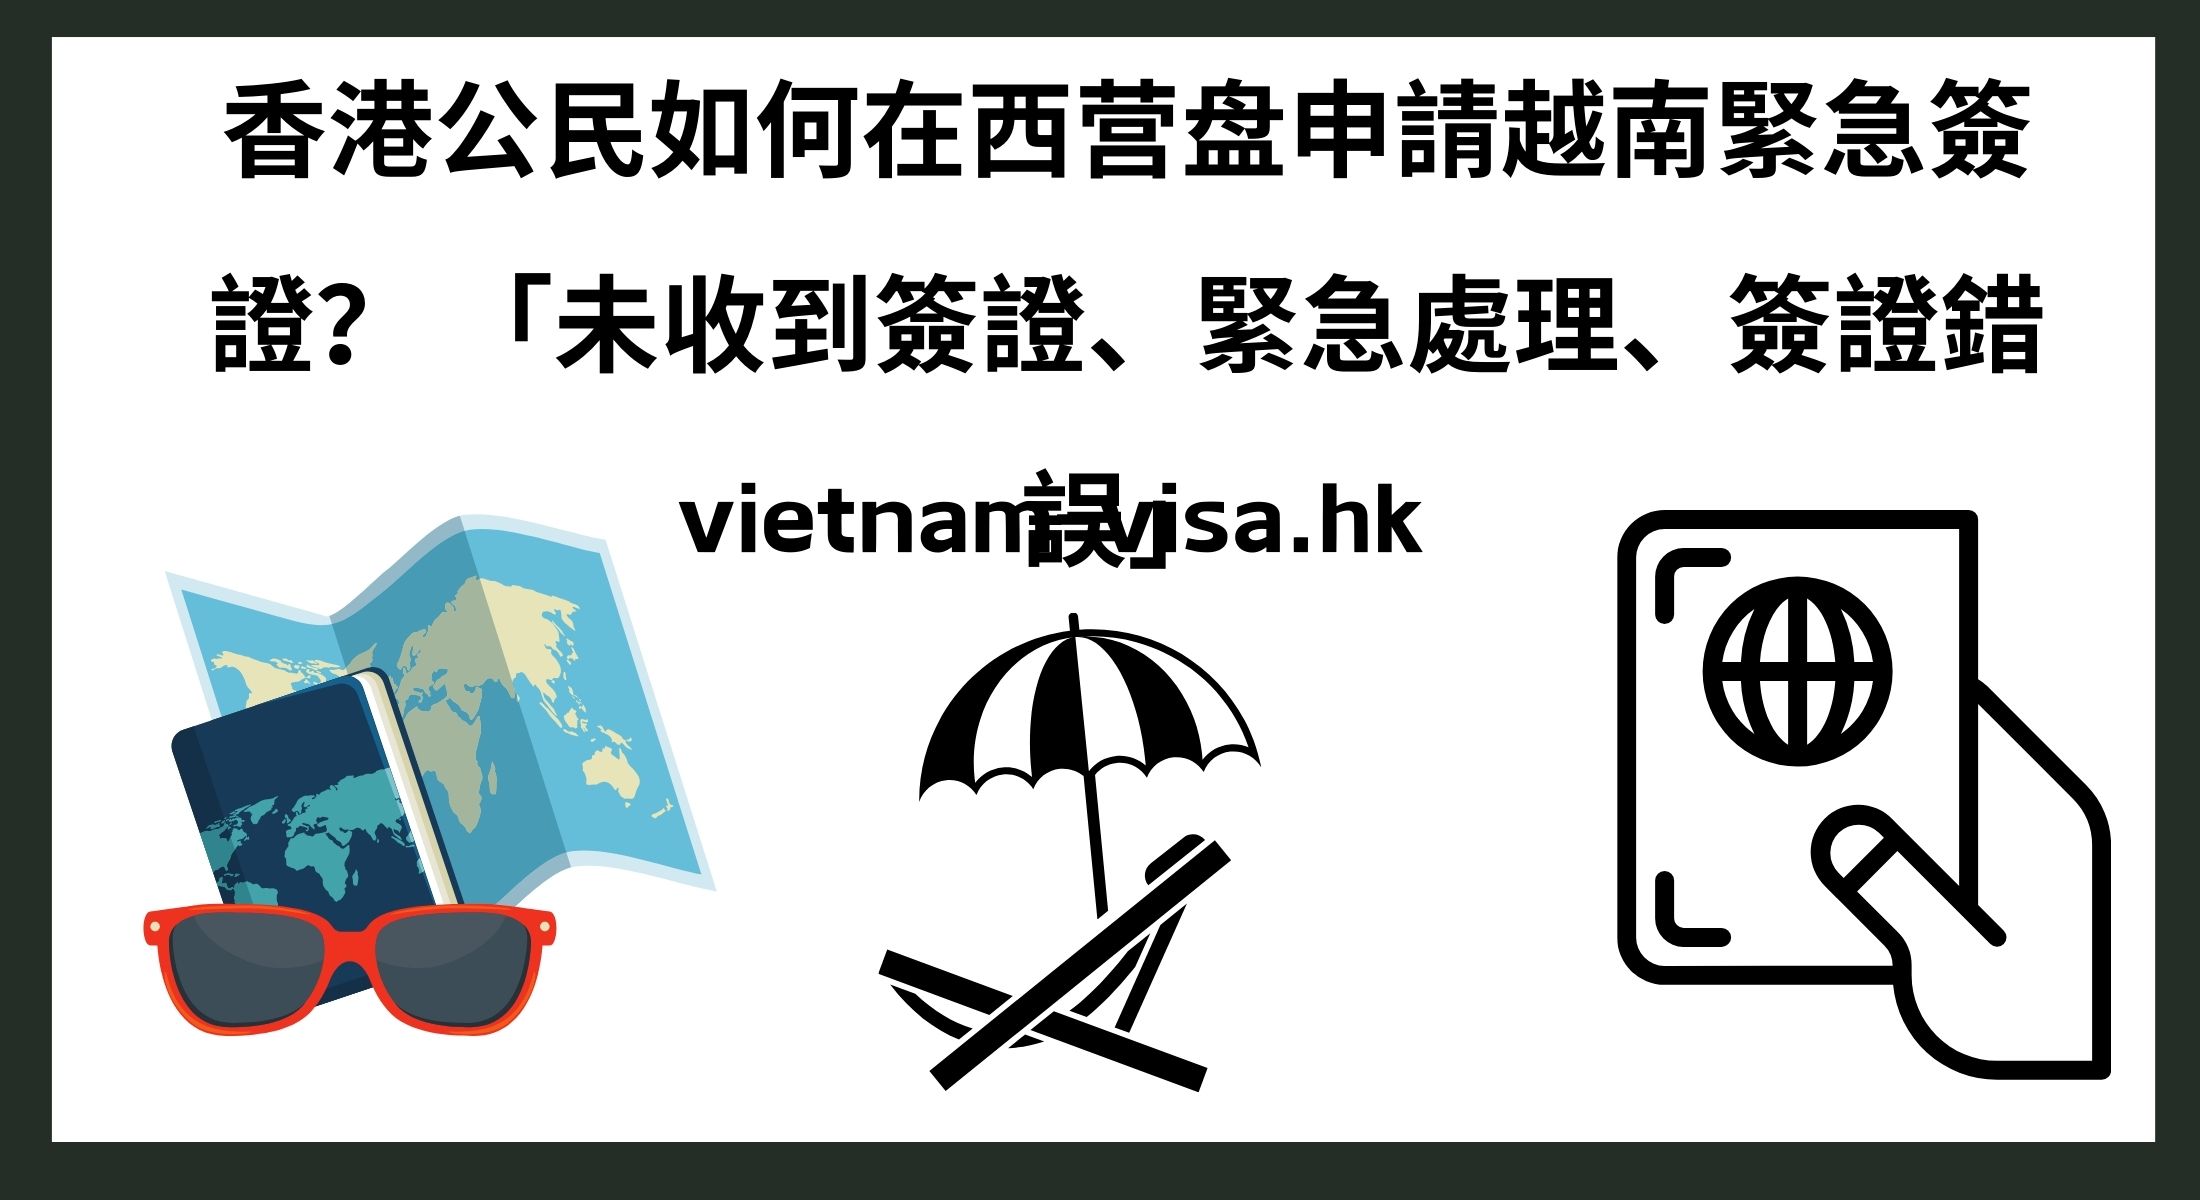 香港公民如何在西营盘申請越南緊急簽證？ 「未收到簽證、緊急處理、簽證錯誤」